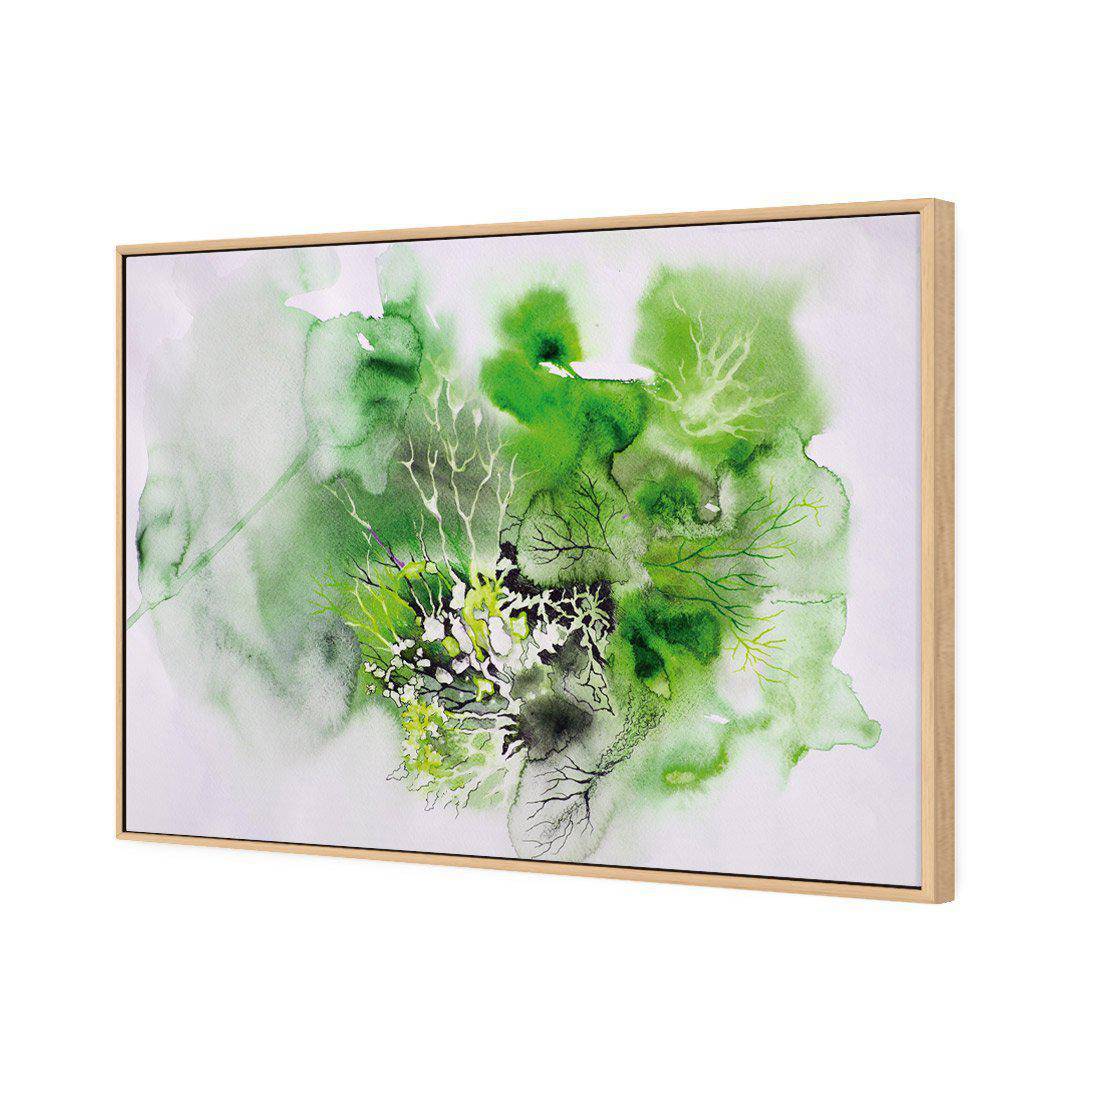 Veins Of Life Green Canvas Art-Canvas-Wall Art Designs-45x30cm-Canvas - Oak Frame-Wall Art Designs